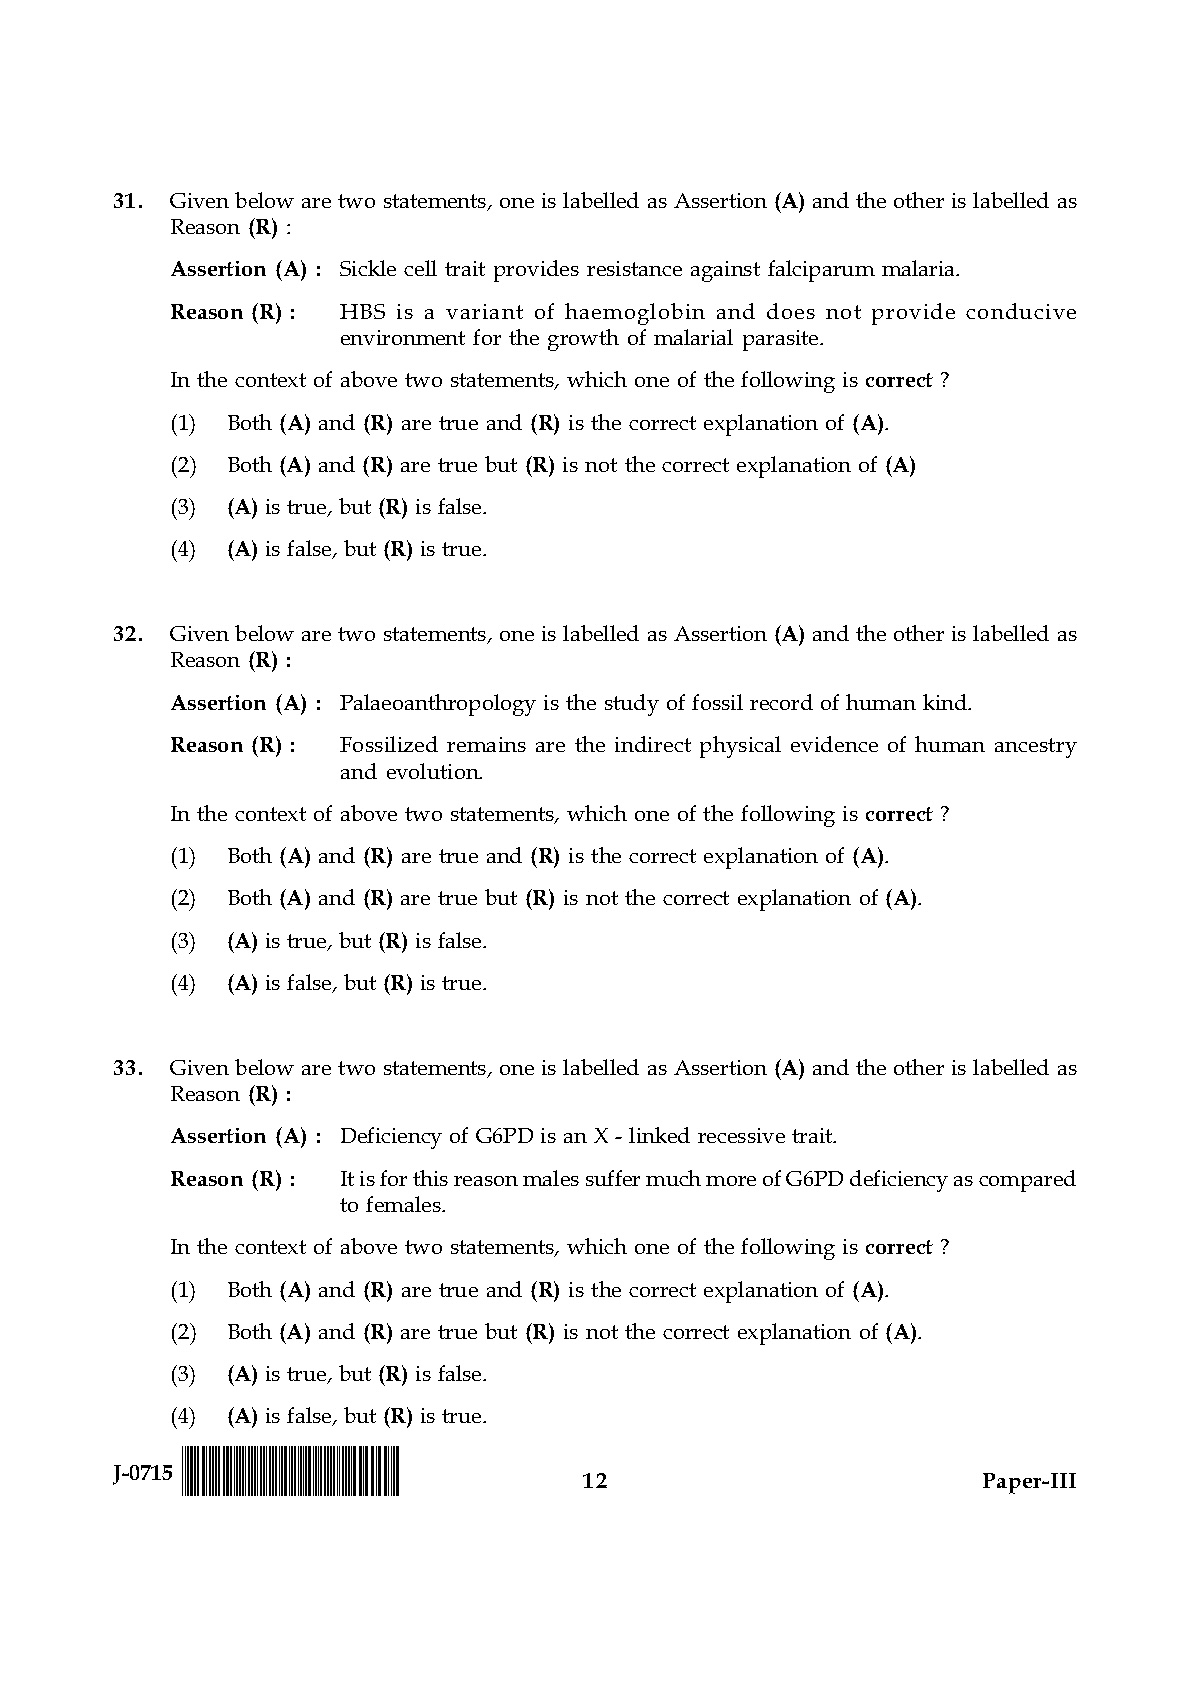 UGC NET Anthropology Question Paper III June 2015 12